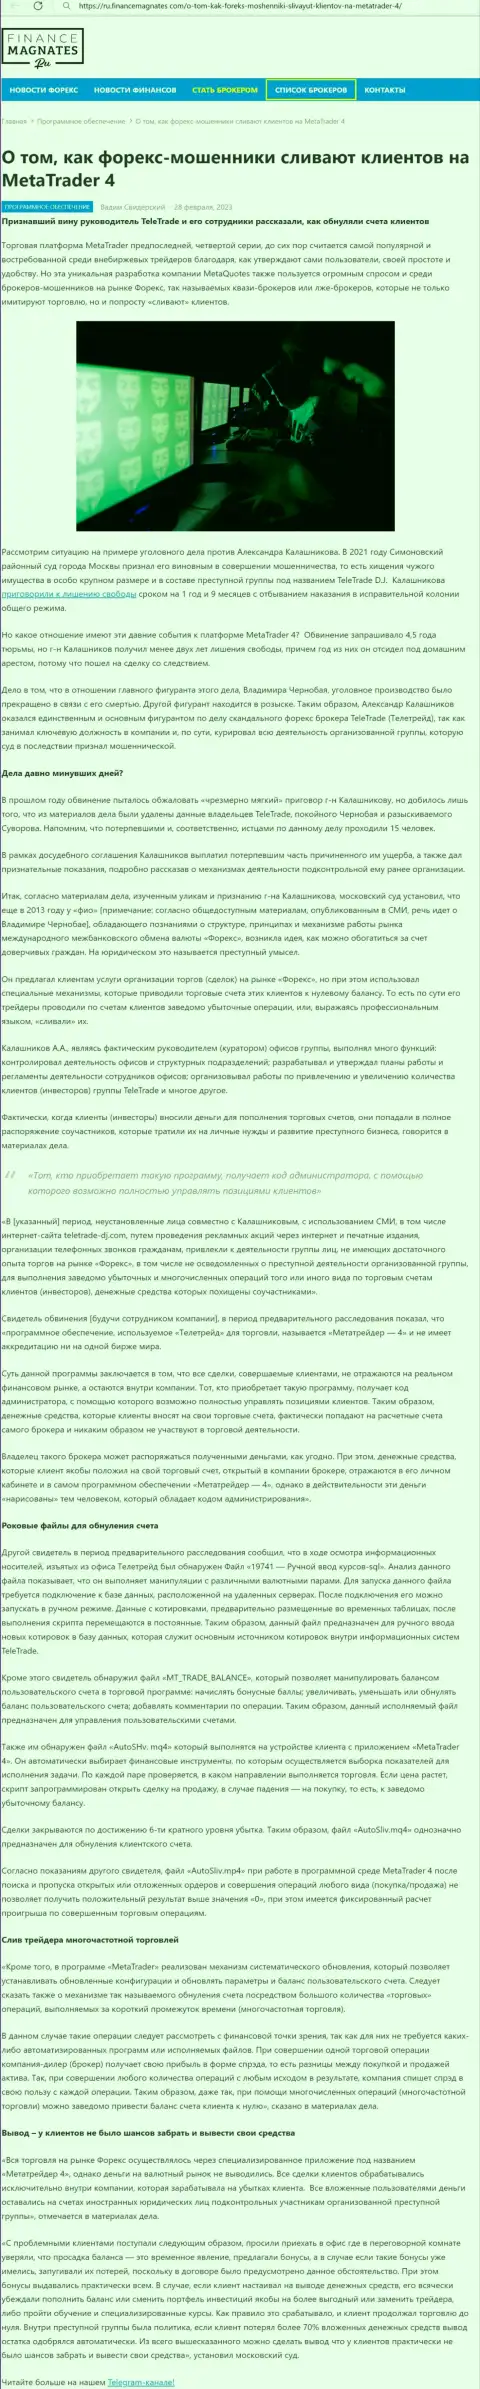 Обзор деяний и отзывы о компании МТ4 - это ВОРЫ !!!